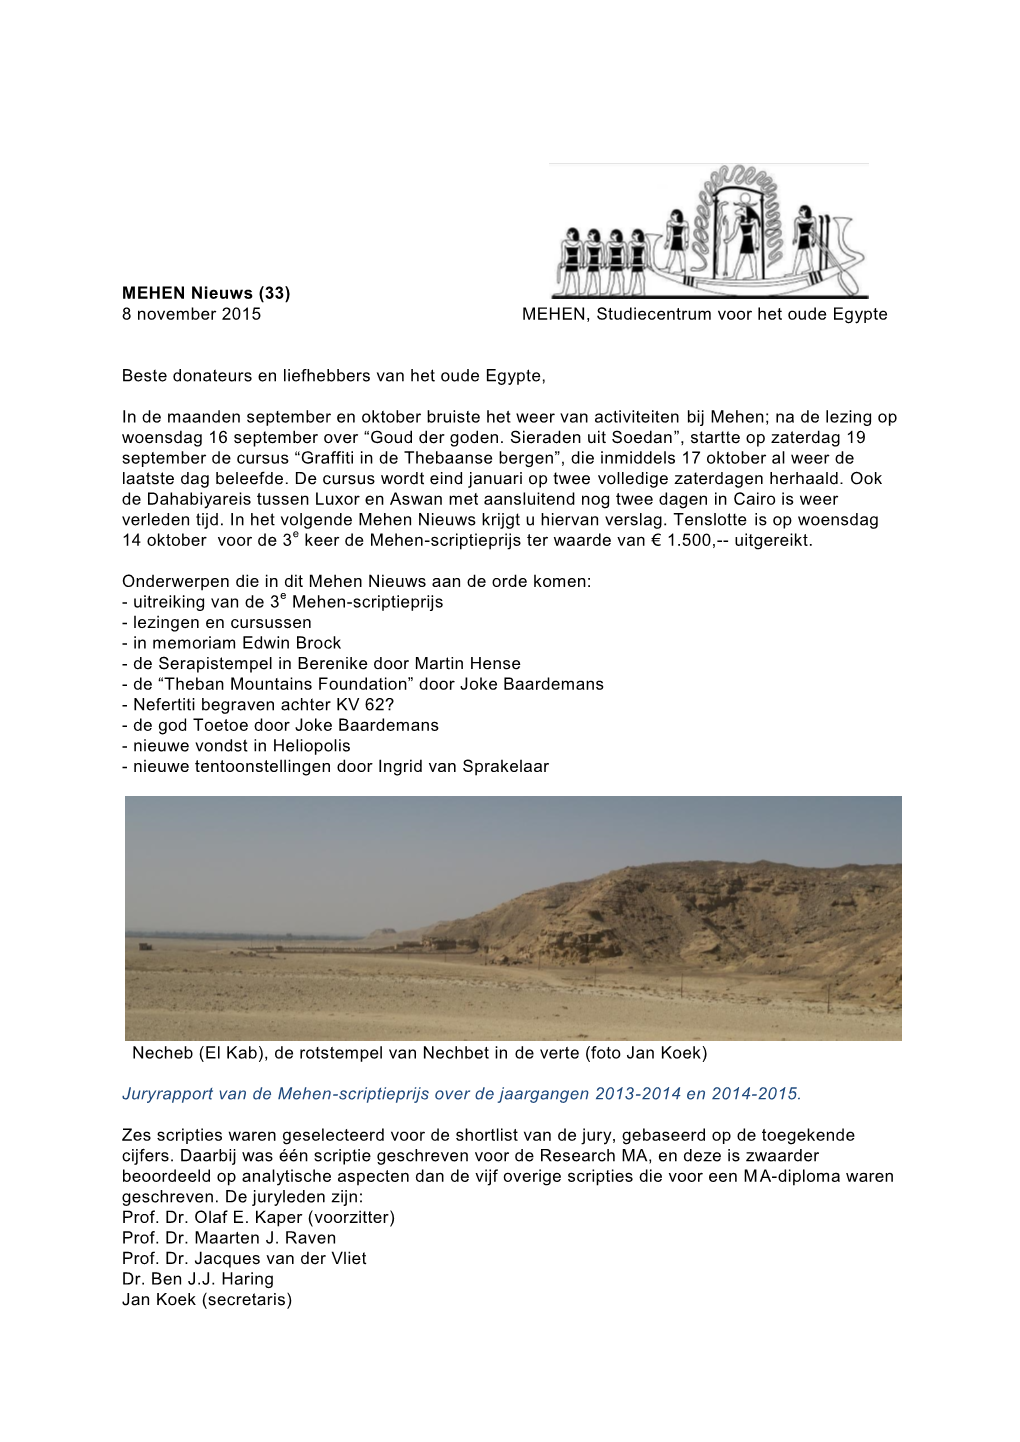 MEHEN Nieuws (33) 8 November 2015 MEHEN, Studiecentrum Voor Het Oude Egypte